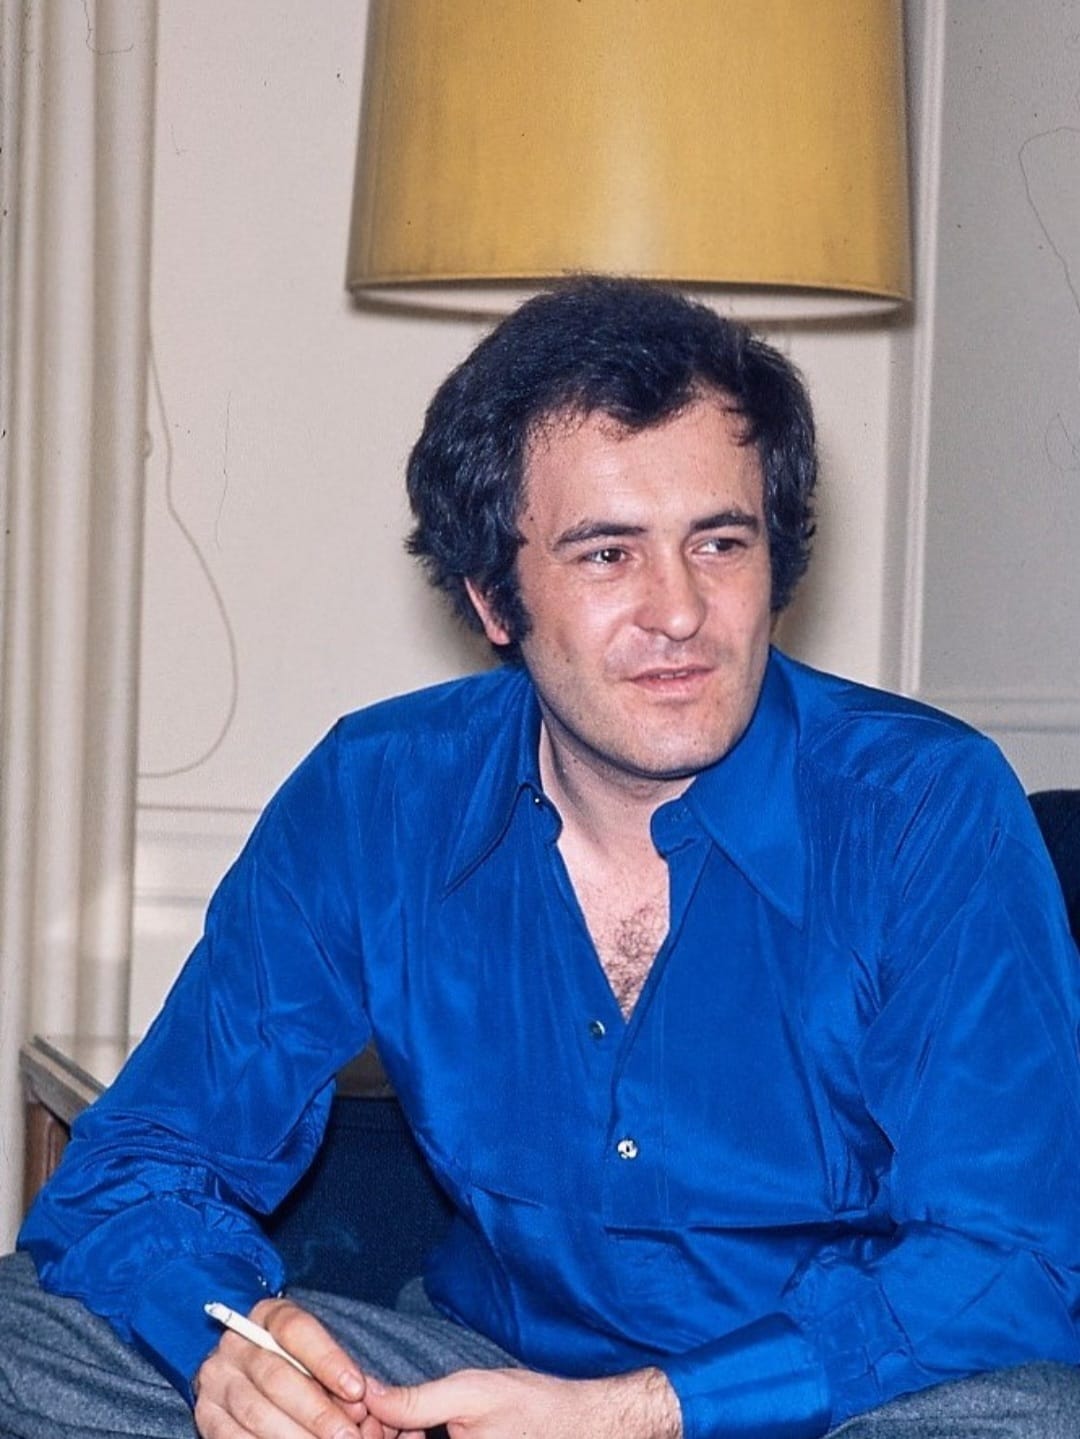 הבמאי האיטלקי הנודע ברנרדו ברטולוצ'י מת ב-26 בנובמבר 2018 בגיל 77 ברומא